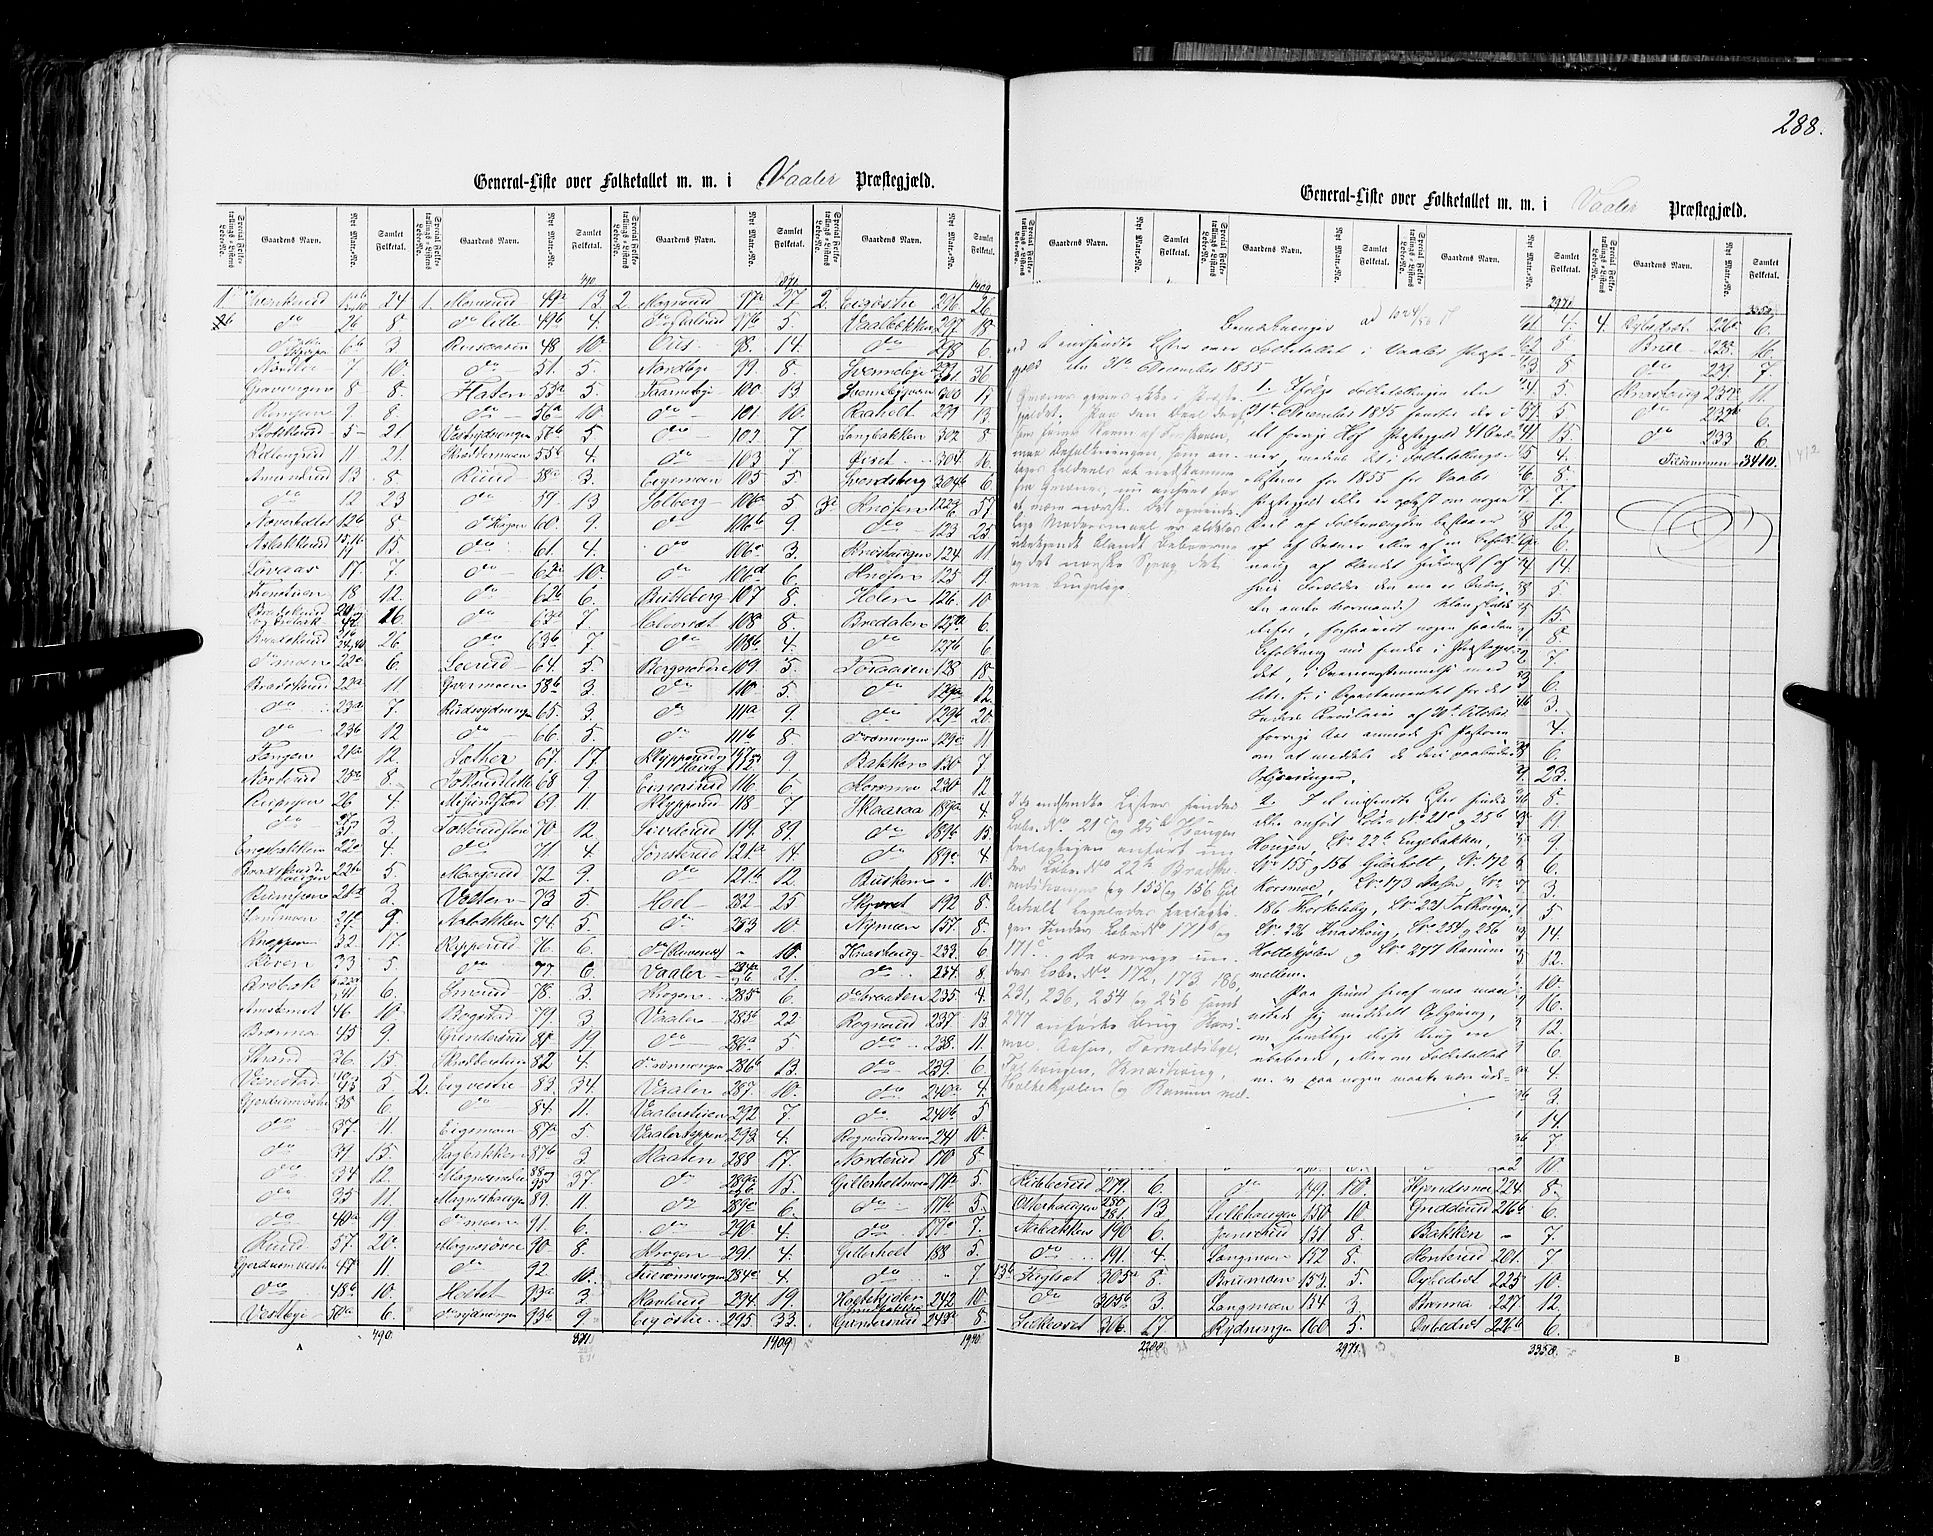 RA, Census 1855, vol. 1: Akershus amt, Smålenenes amt og Hedemarken amt, 1855, p. 288